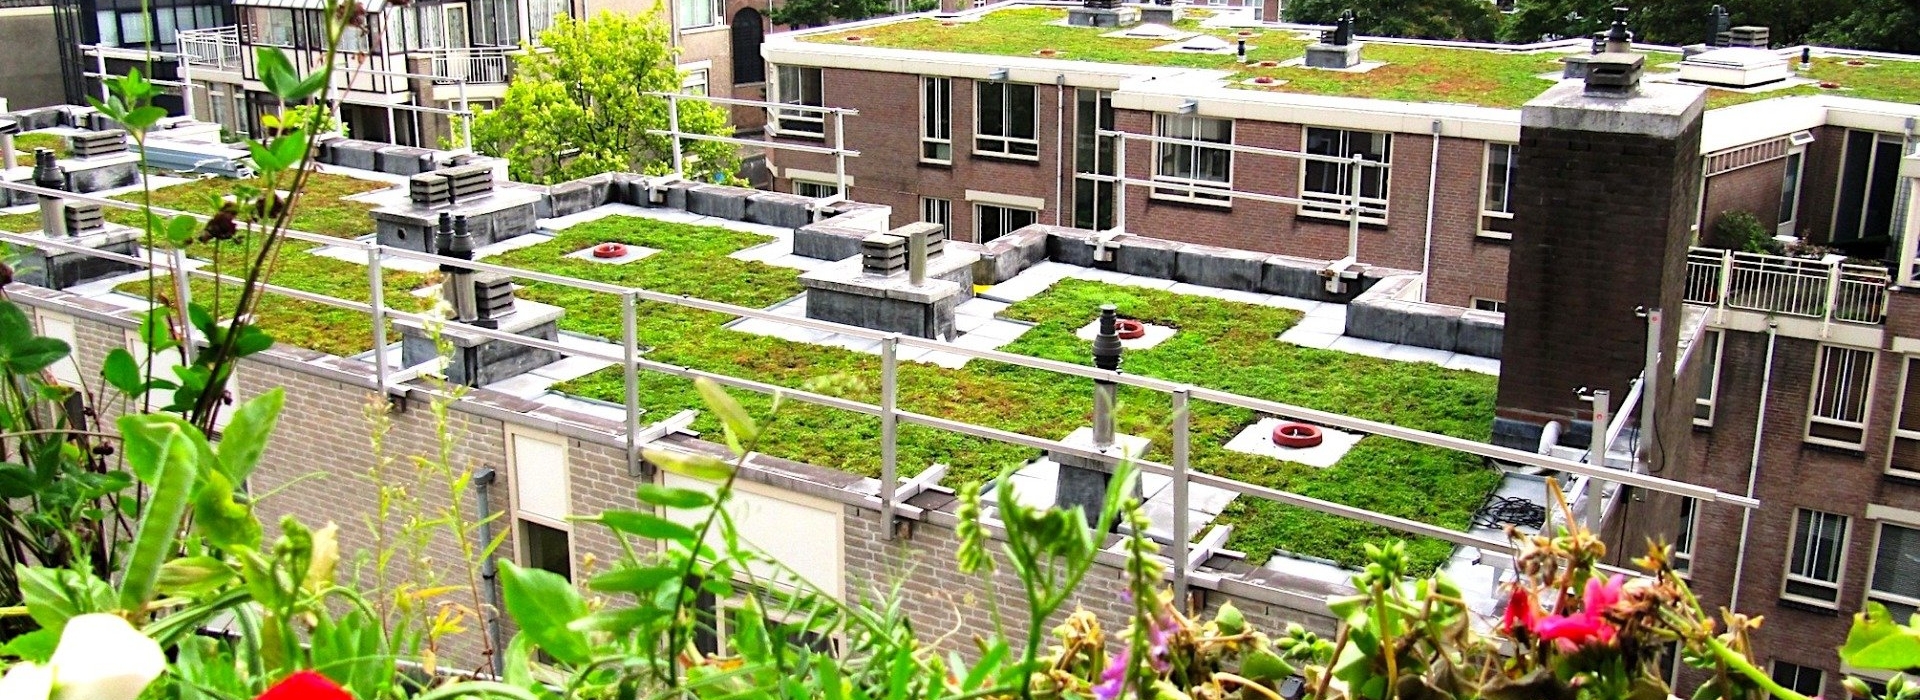 groen-dak-amsterdam.jpg